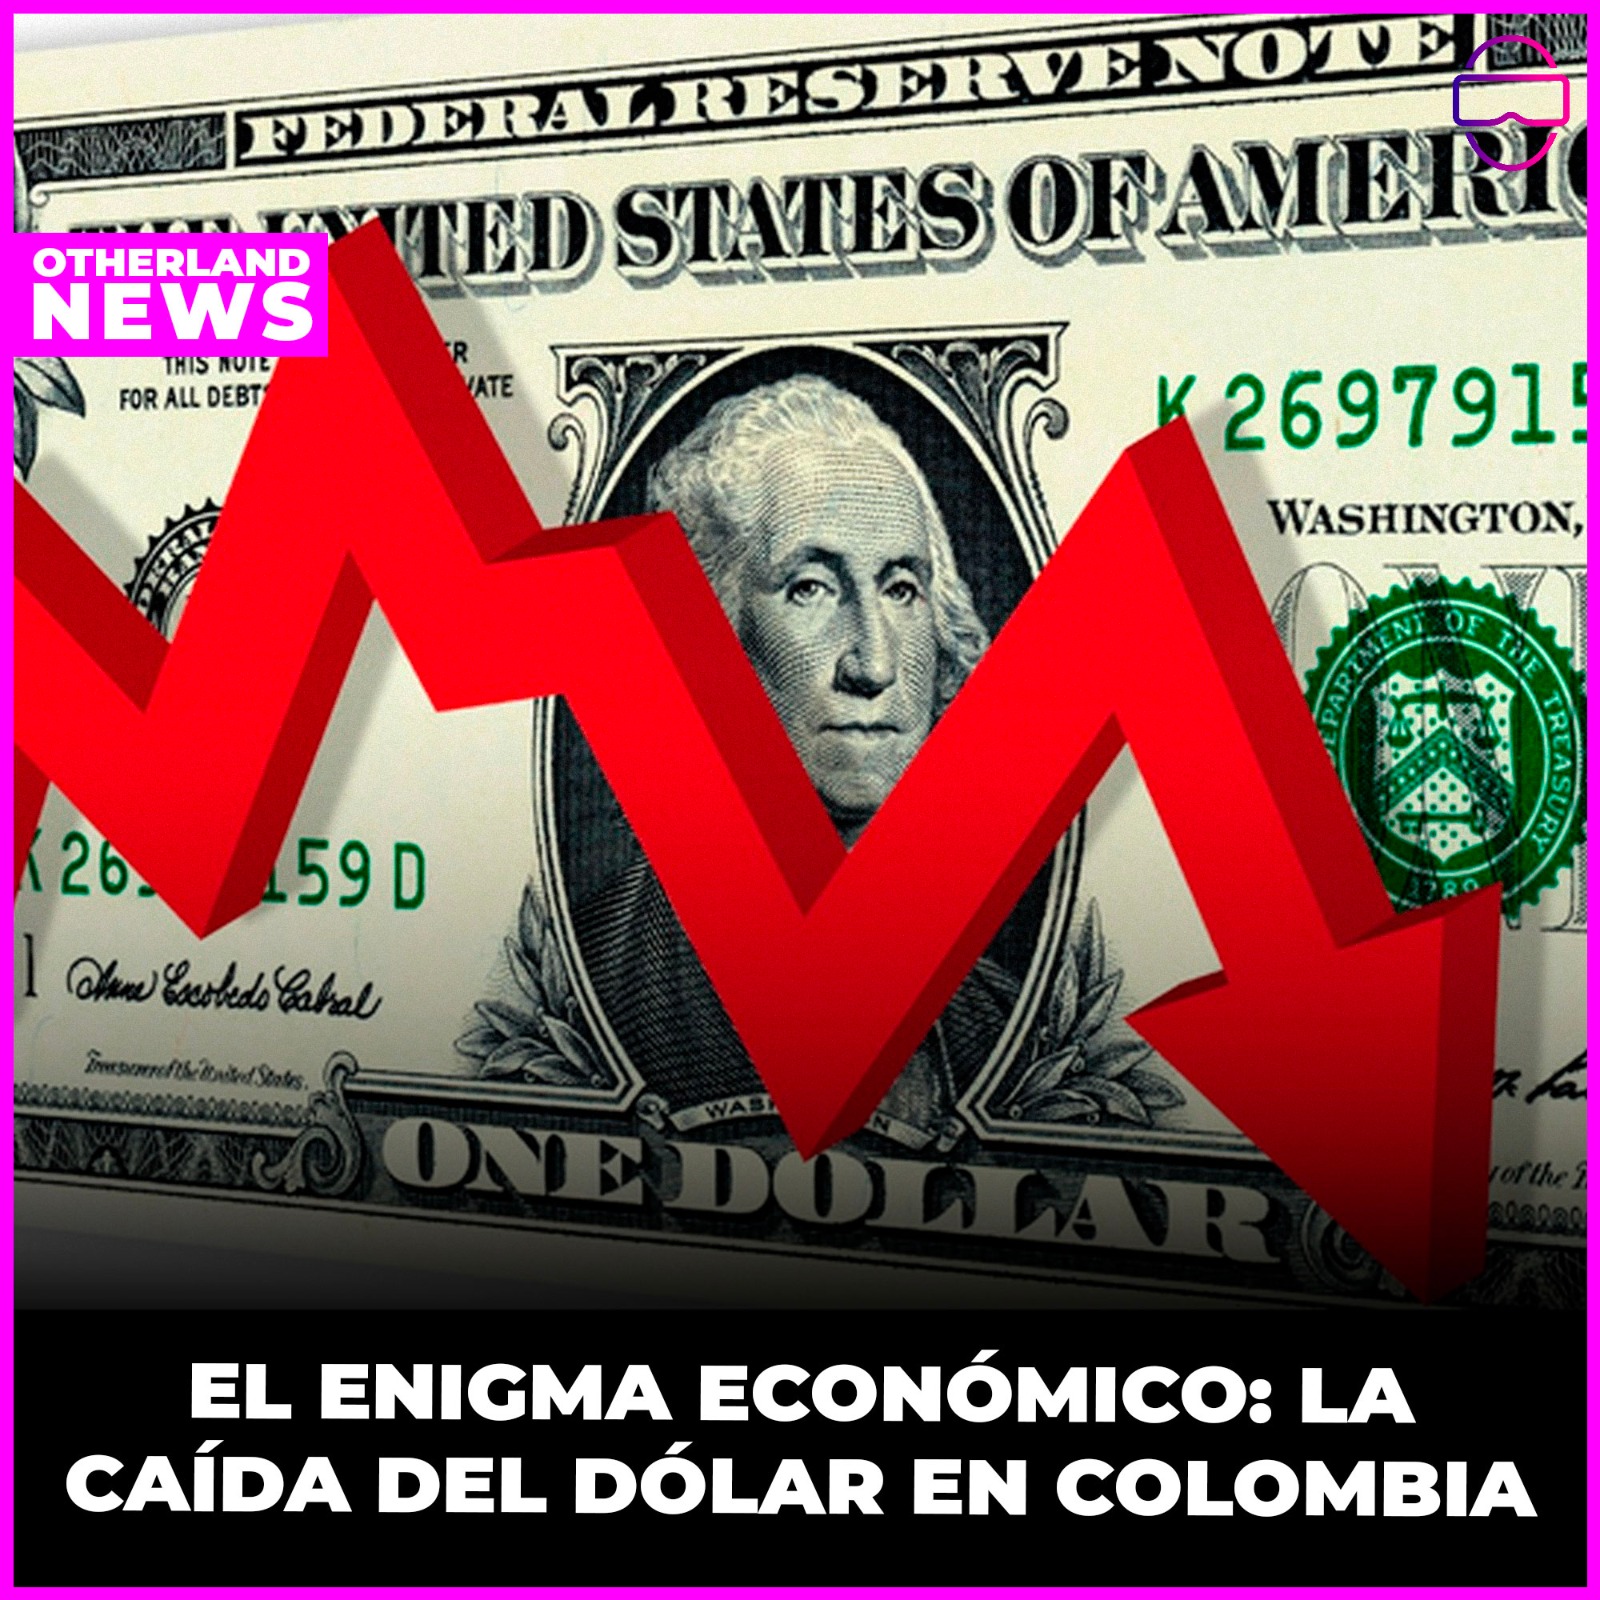 Otherland : El enigma económico: La caída del dólar en Colombia